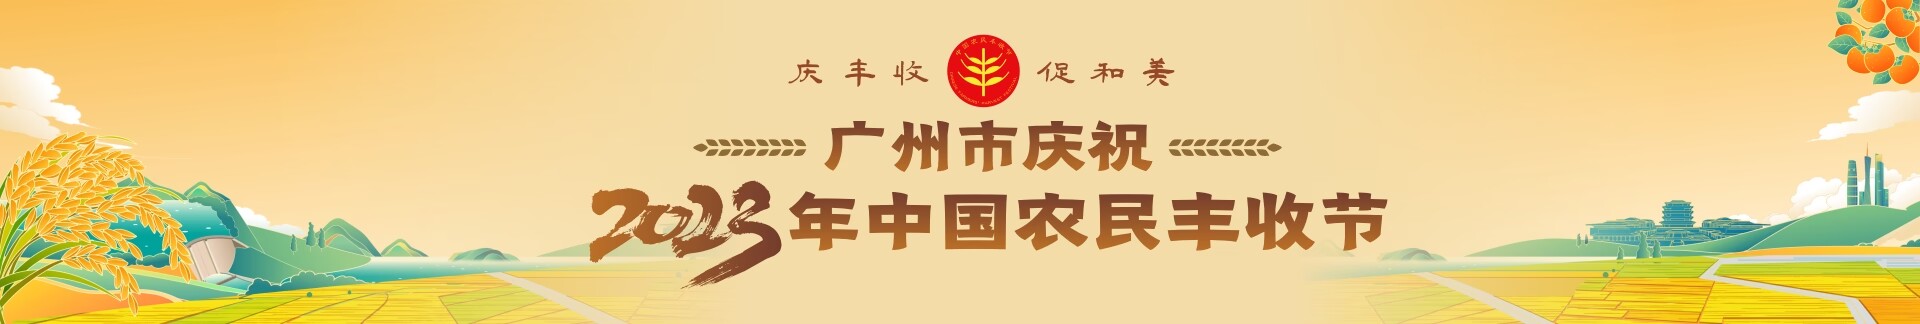 庆丰收 促和美 广州市庆祝2023年中国农民丰收节